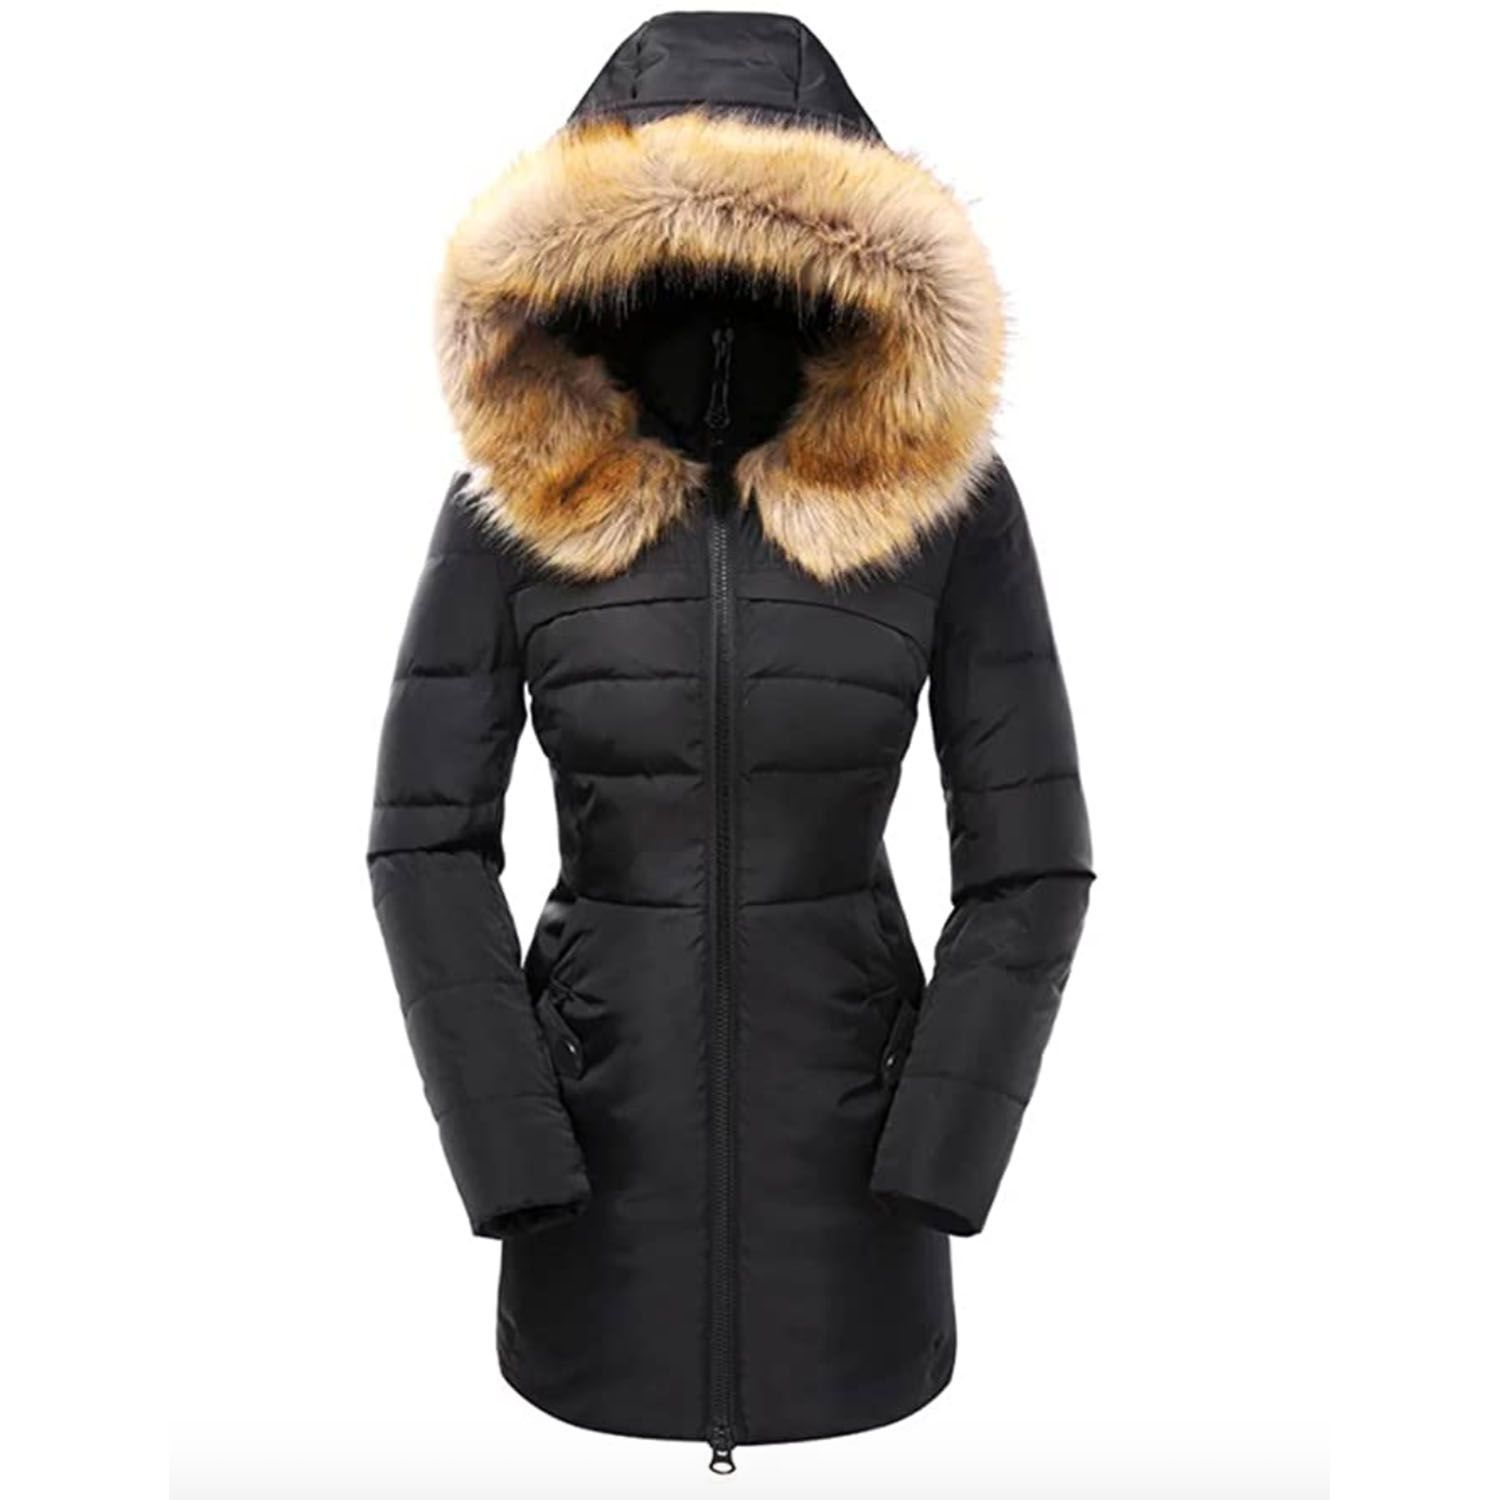 Womens Fashion Faux Fur Hooded Winter Warm Padded Coat Jacket Parka Outwear 1818 